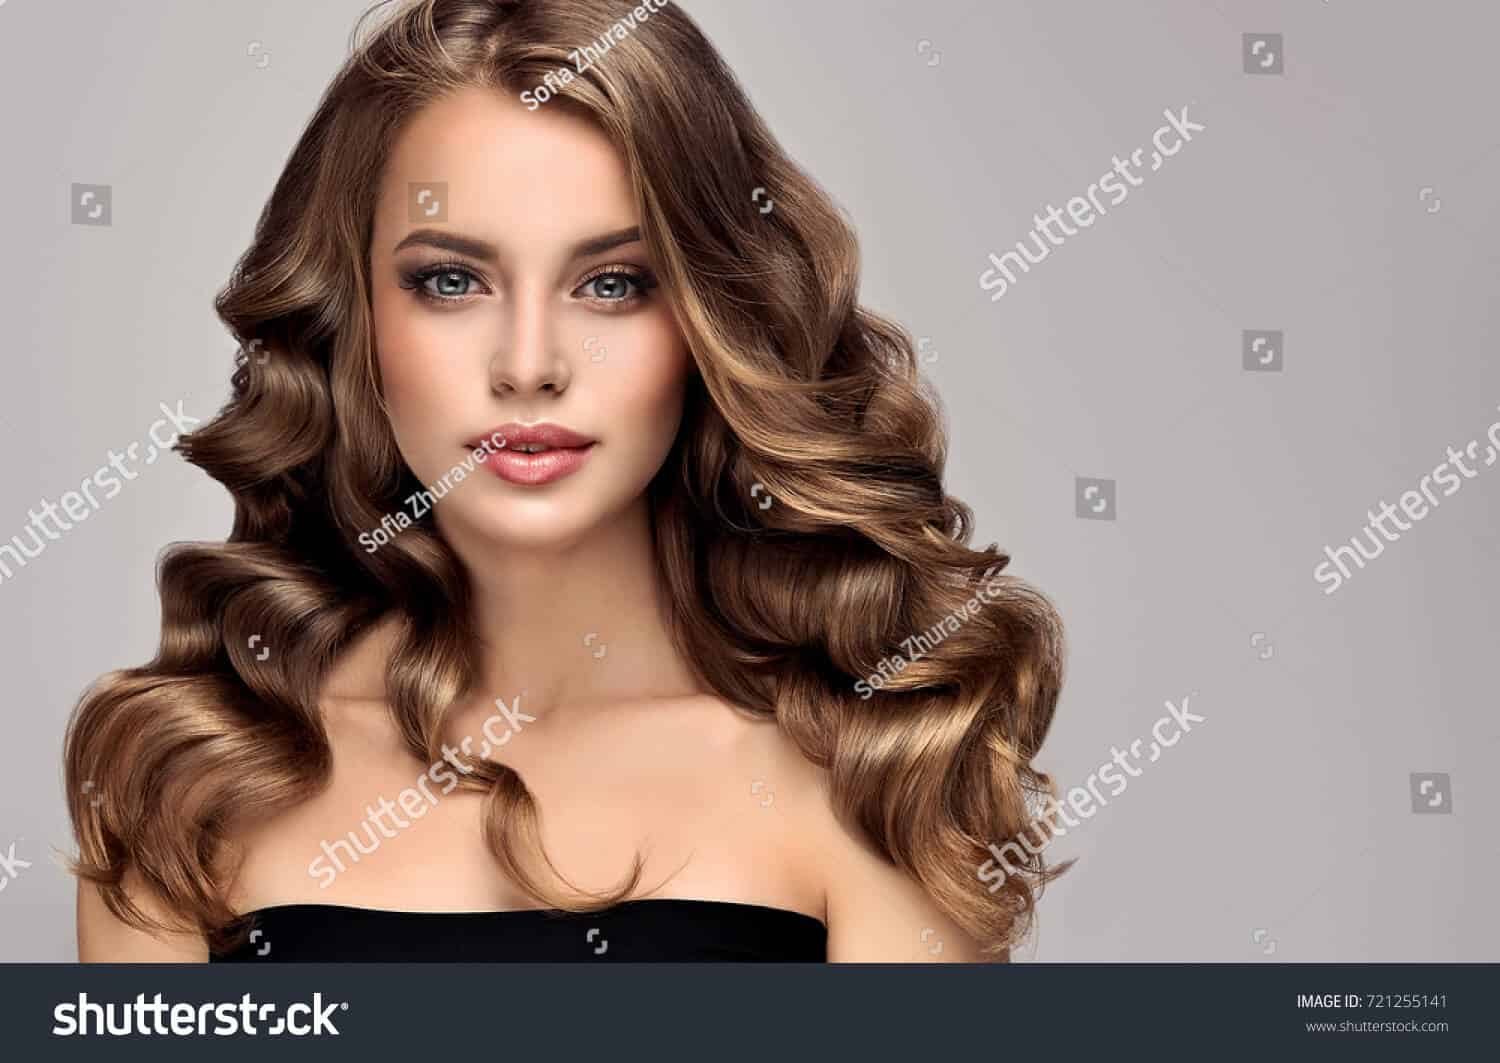 7 triệu hình ảnh cô gái và tóc chất lượng cao trên Shutterstock